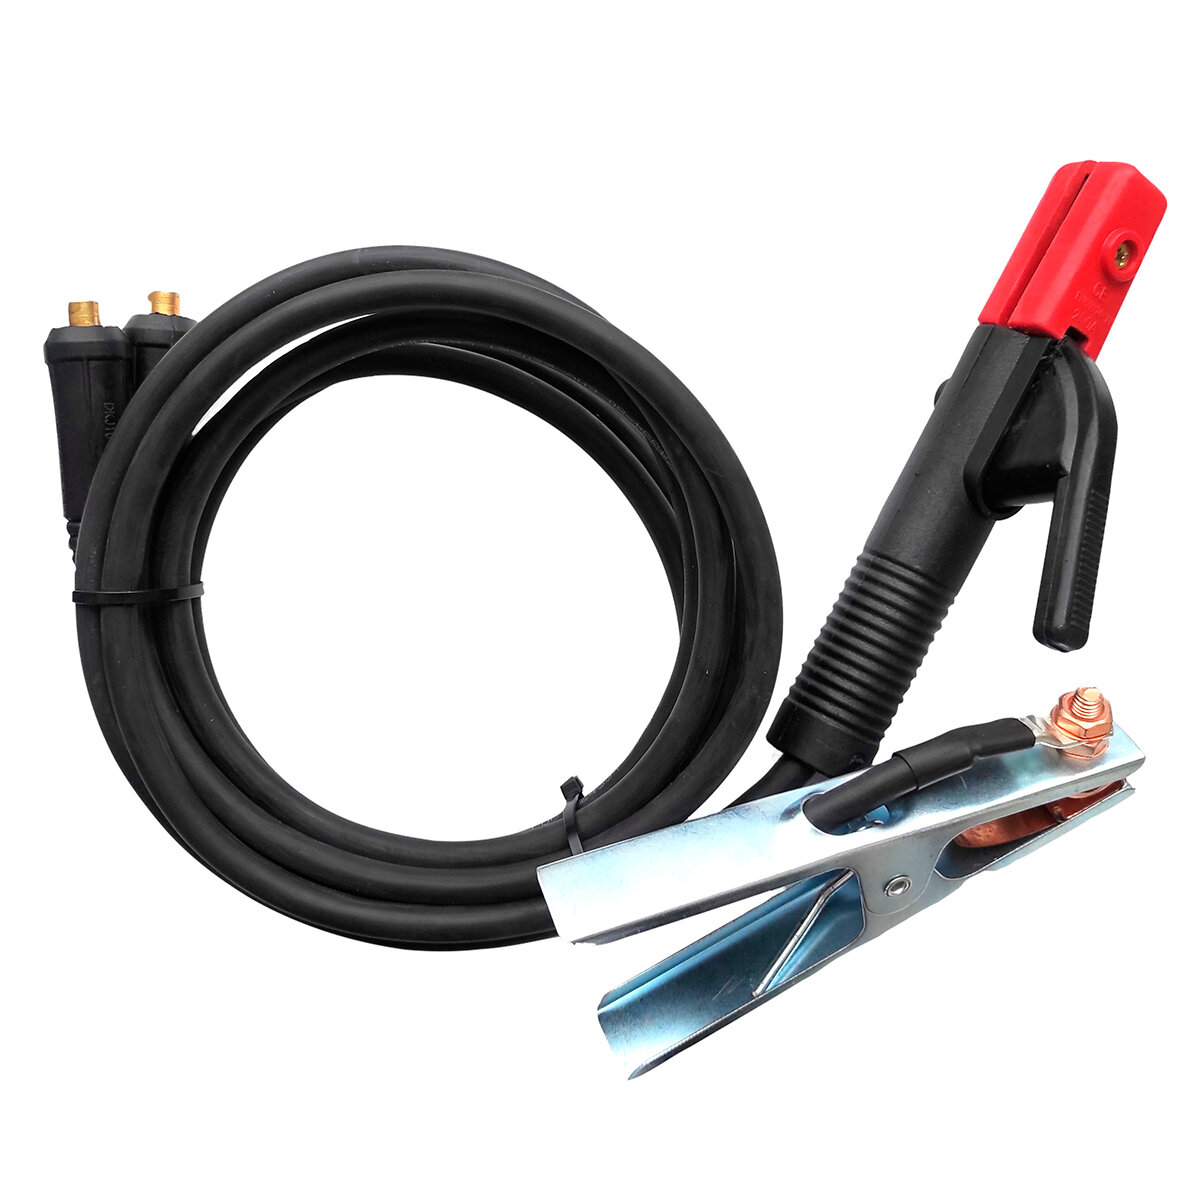 Комплект кабелей d16 mm 3м Профессионал 014 комплект сварочных кабелей vebex 10 метров держатели 300а вилки 10 25 скваркаб10м